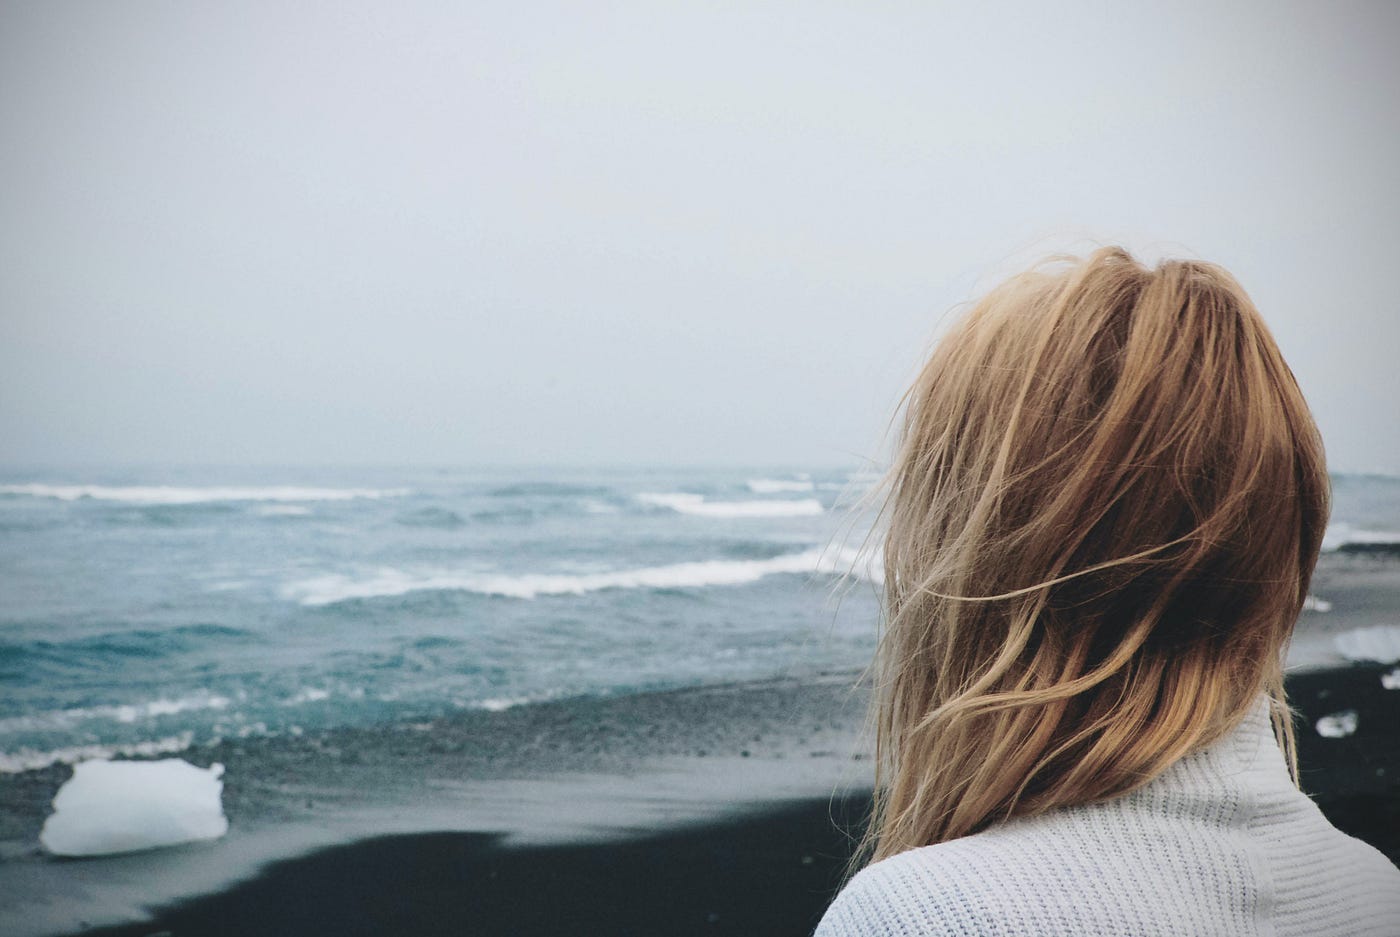 A girl overlooking the ocean.